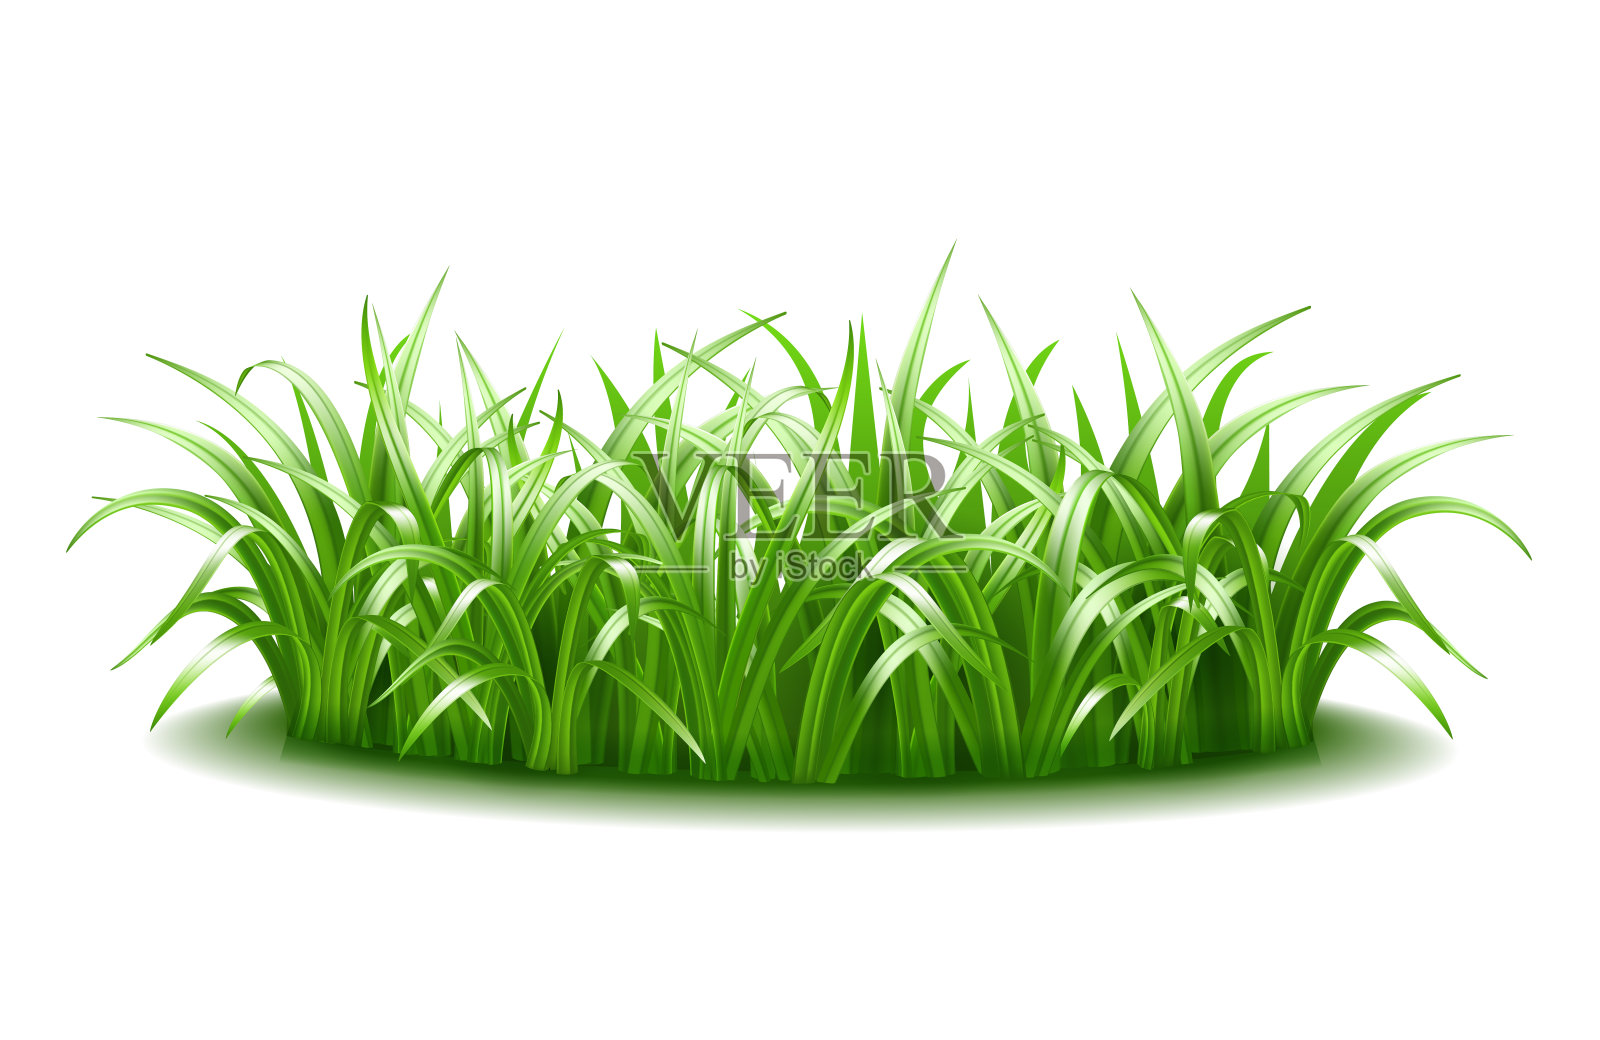 一簇浓密的绿色、多汁、鲜艳的草。设计元素图片